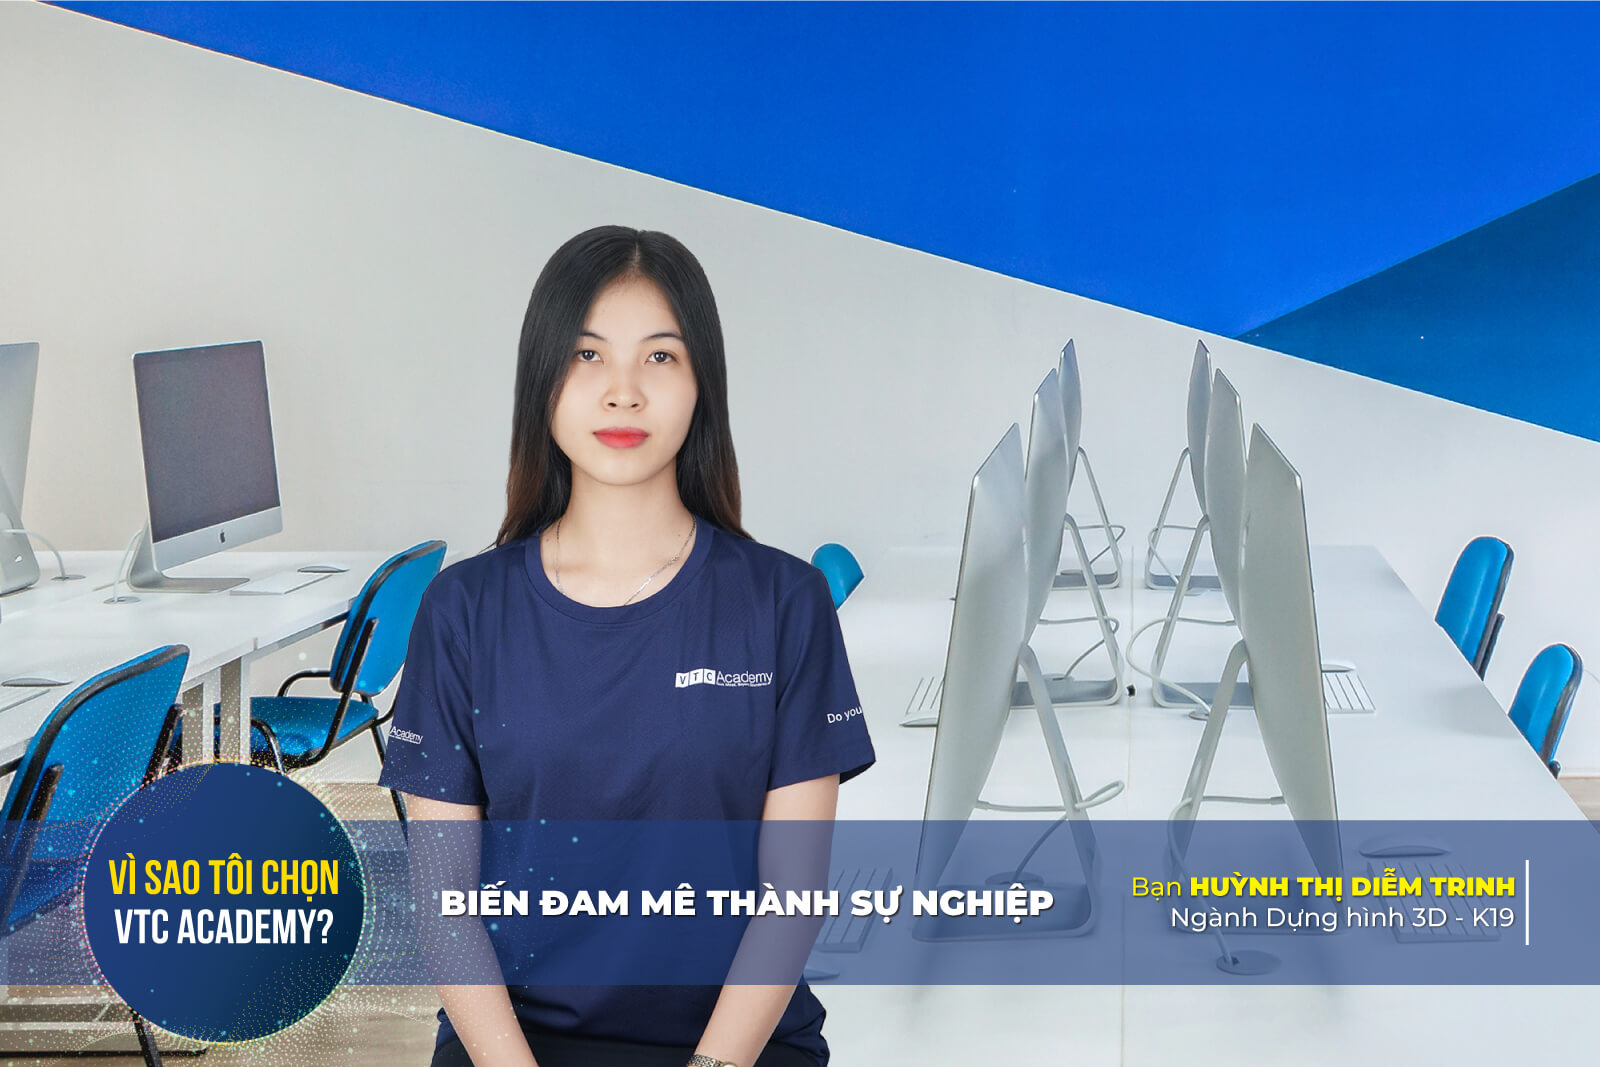 Trò chuyện cùng Diễm Trinh – Cô cử nhân quản trị kinh doanh quyết theo học Dựng hình 3D vì đam mê thiết kế